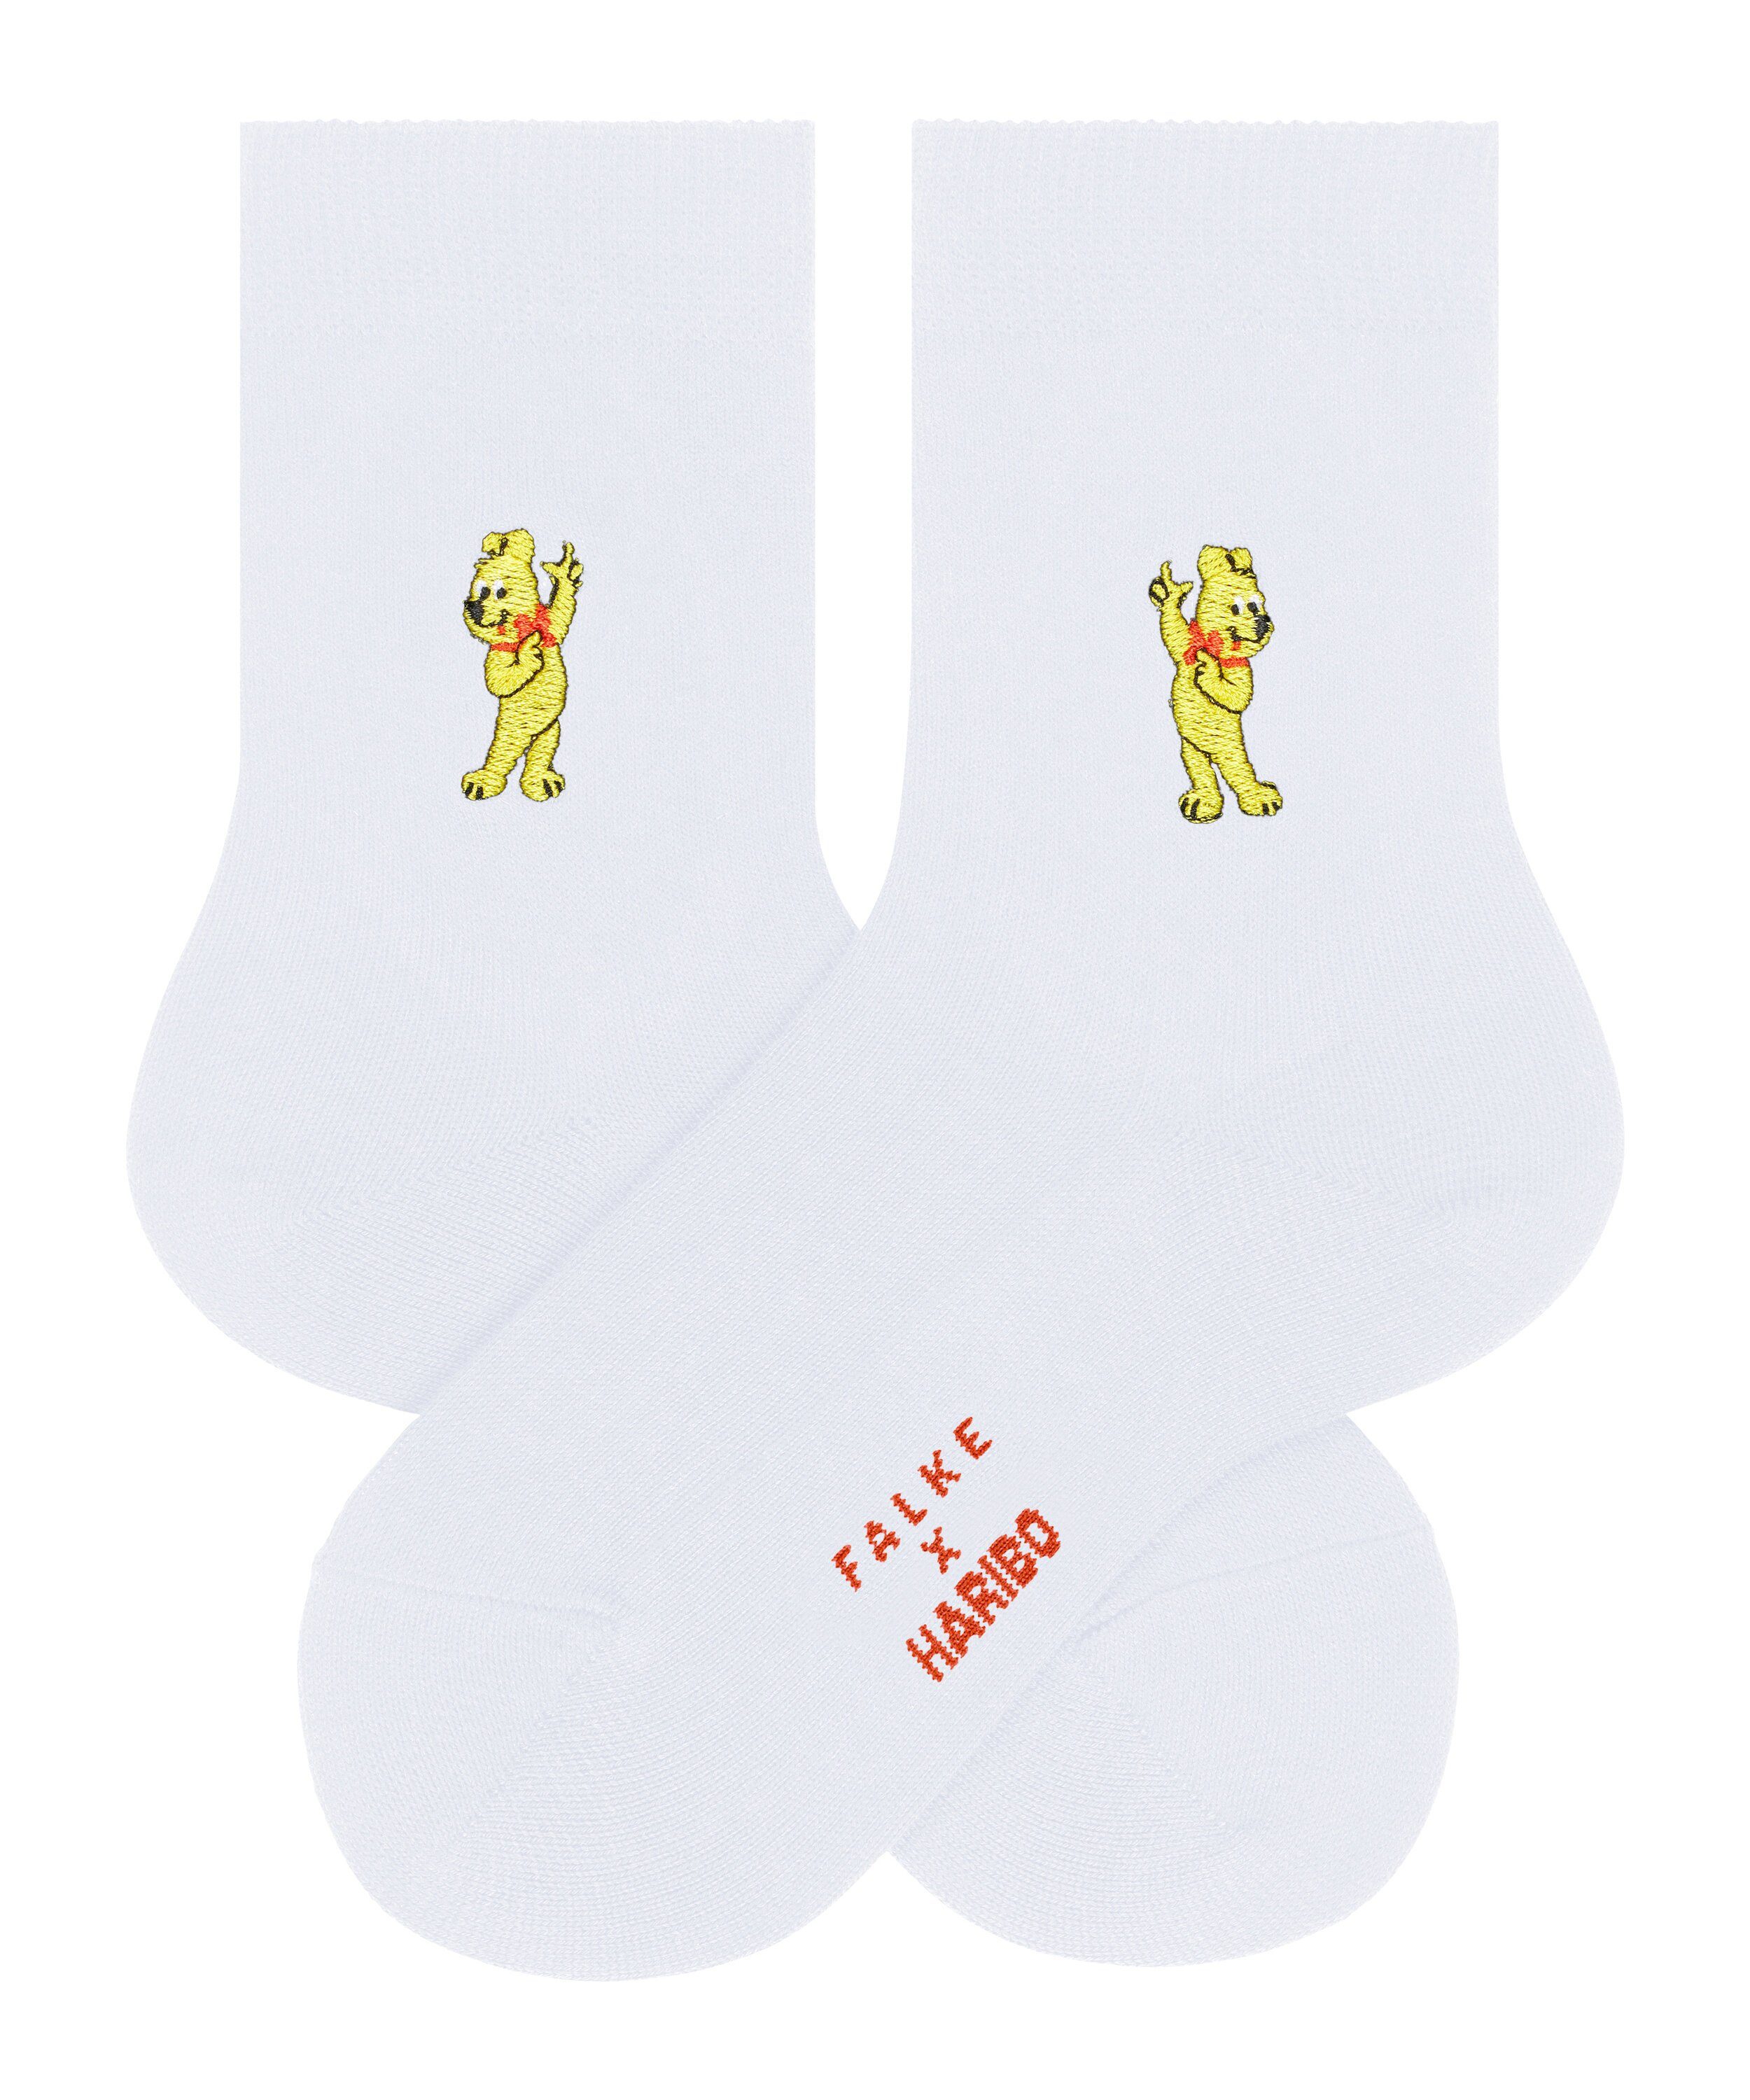 FALKE Socken FALKE x Haribo (2000) white (1-Paar)